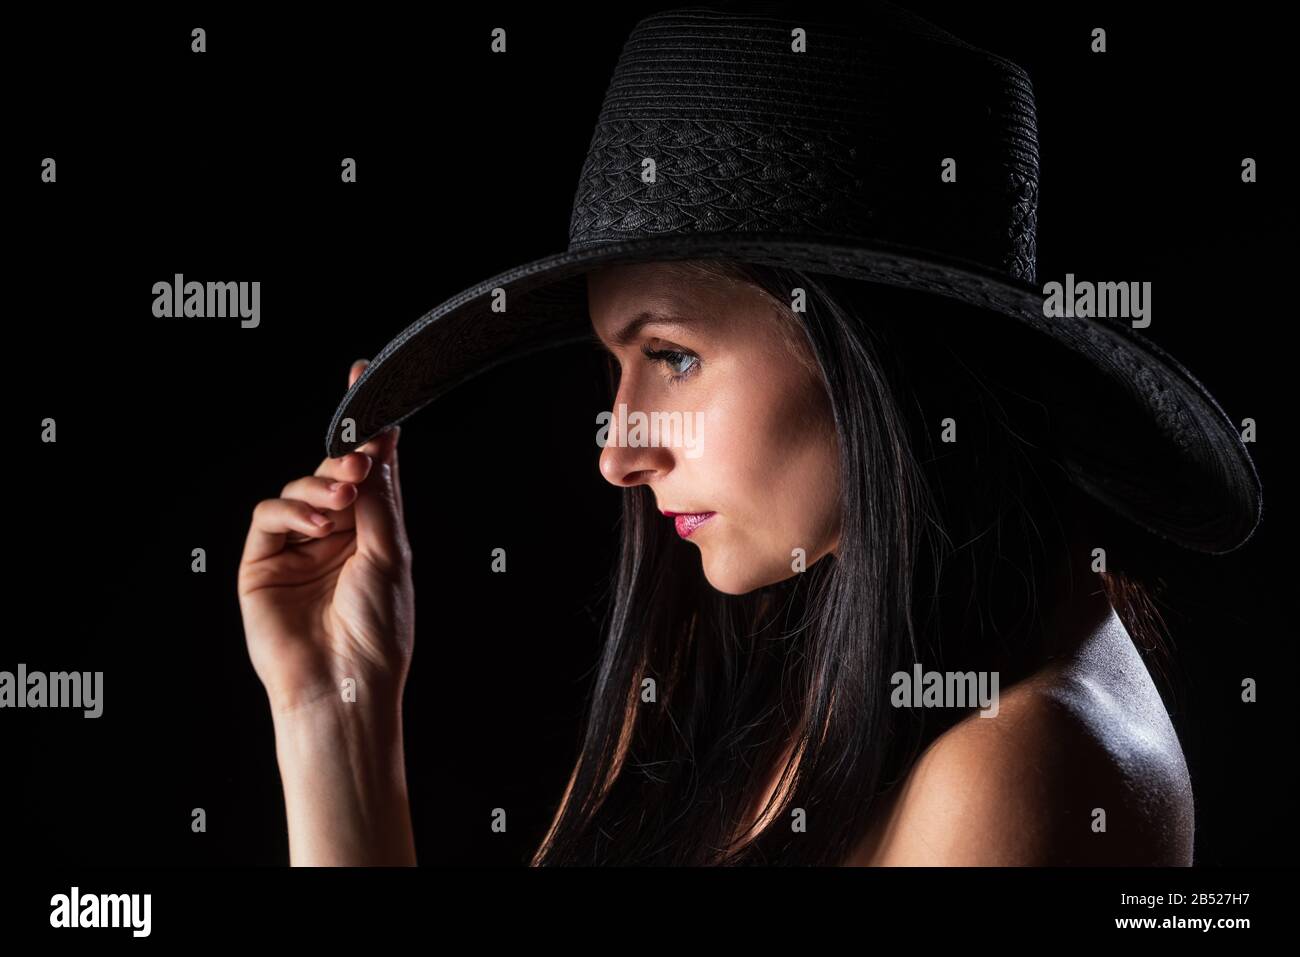 Giovane donna nuda con make up. Modello con cappello. Nudo ragazza bellezza ritratto su sfondo nero. Foto Stock